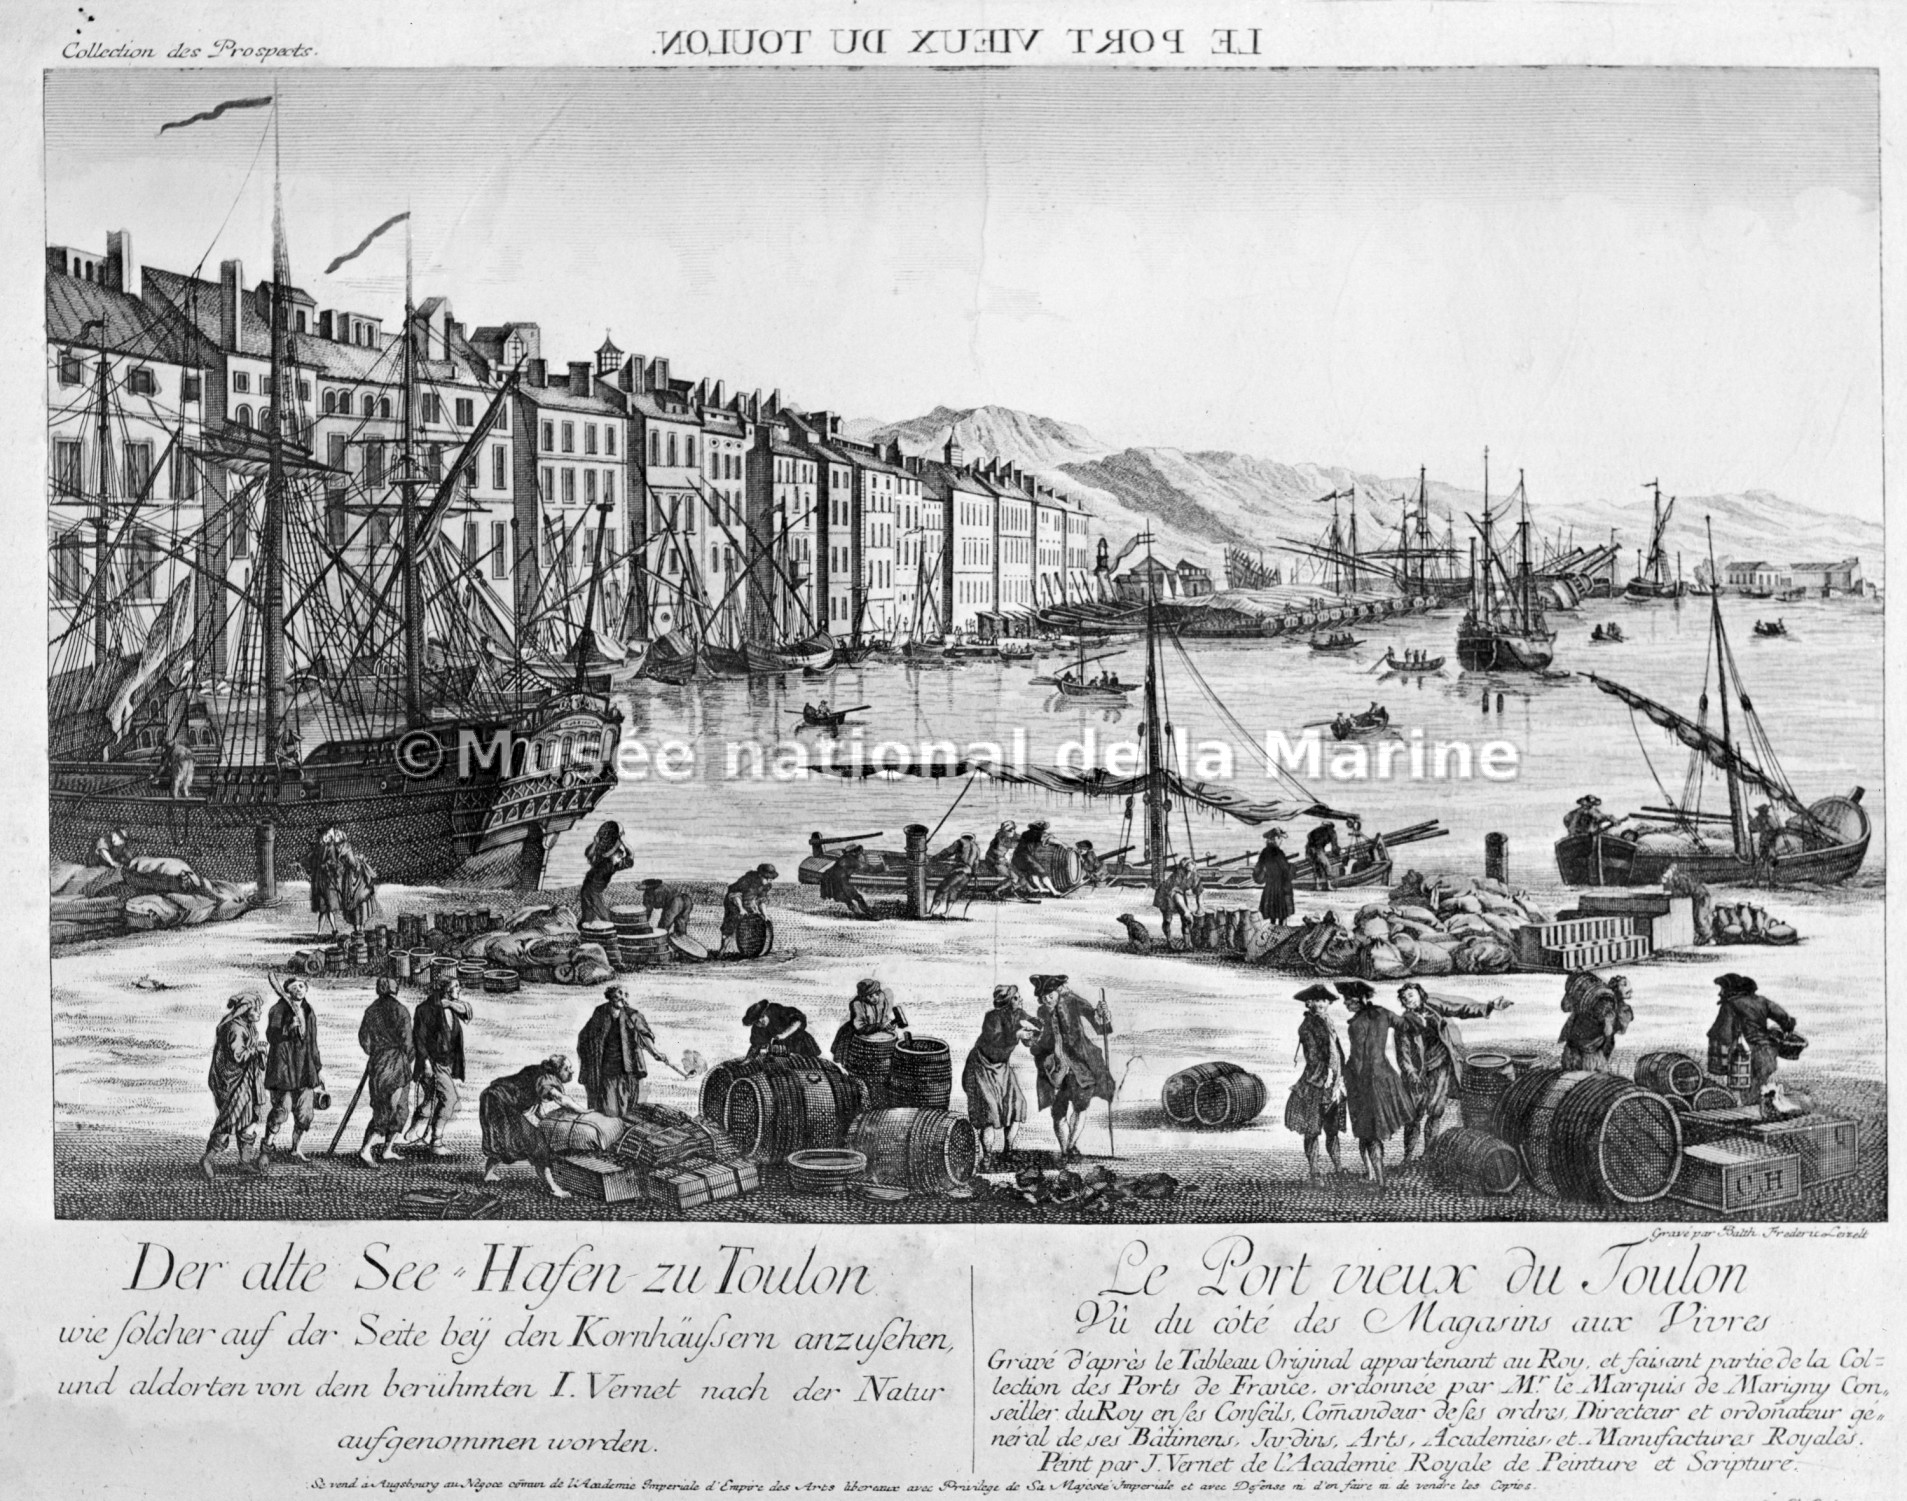 Le port vieux du Toulon